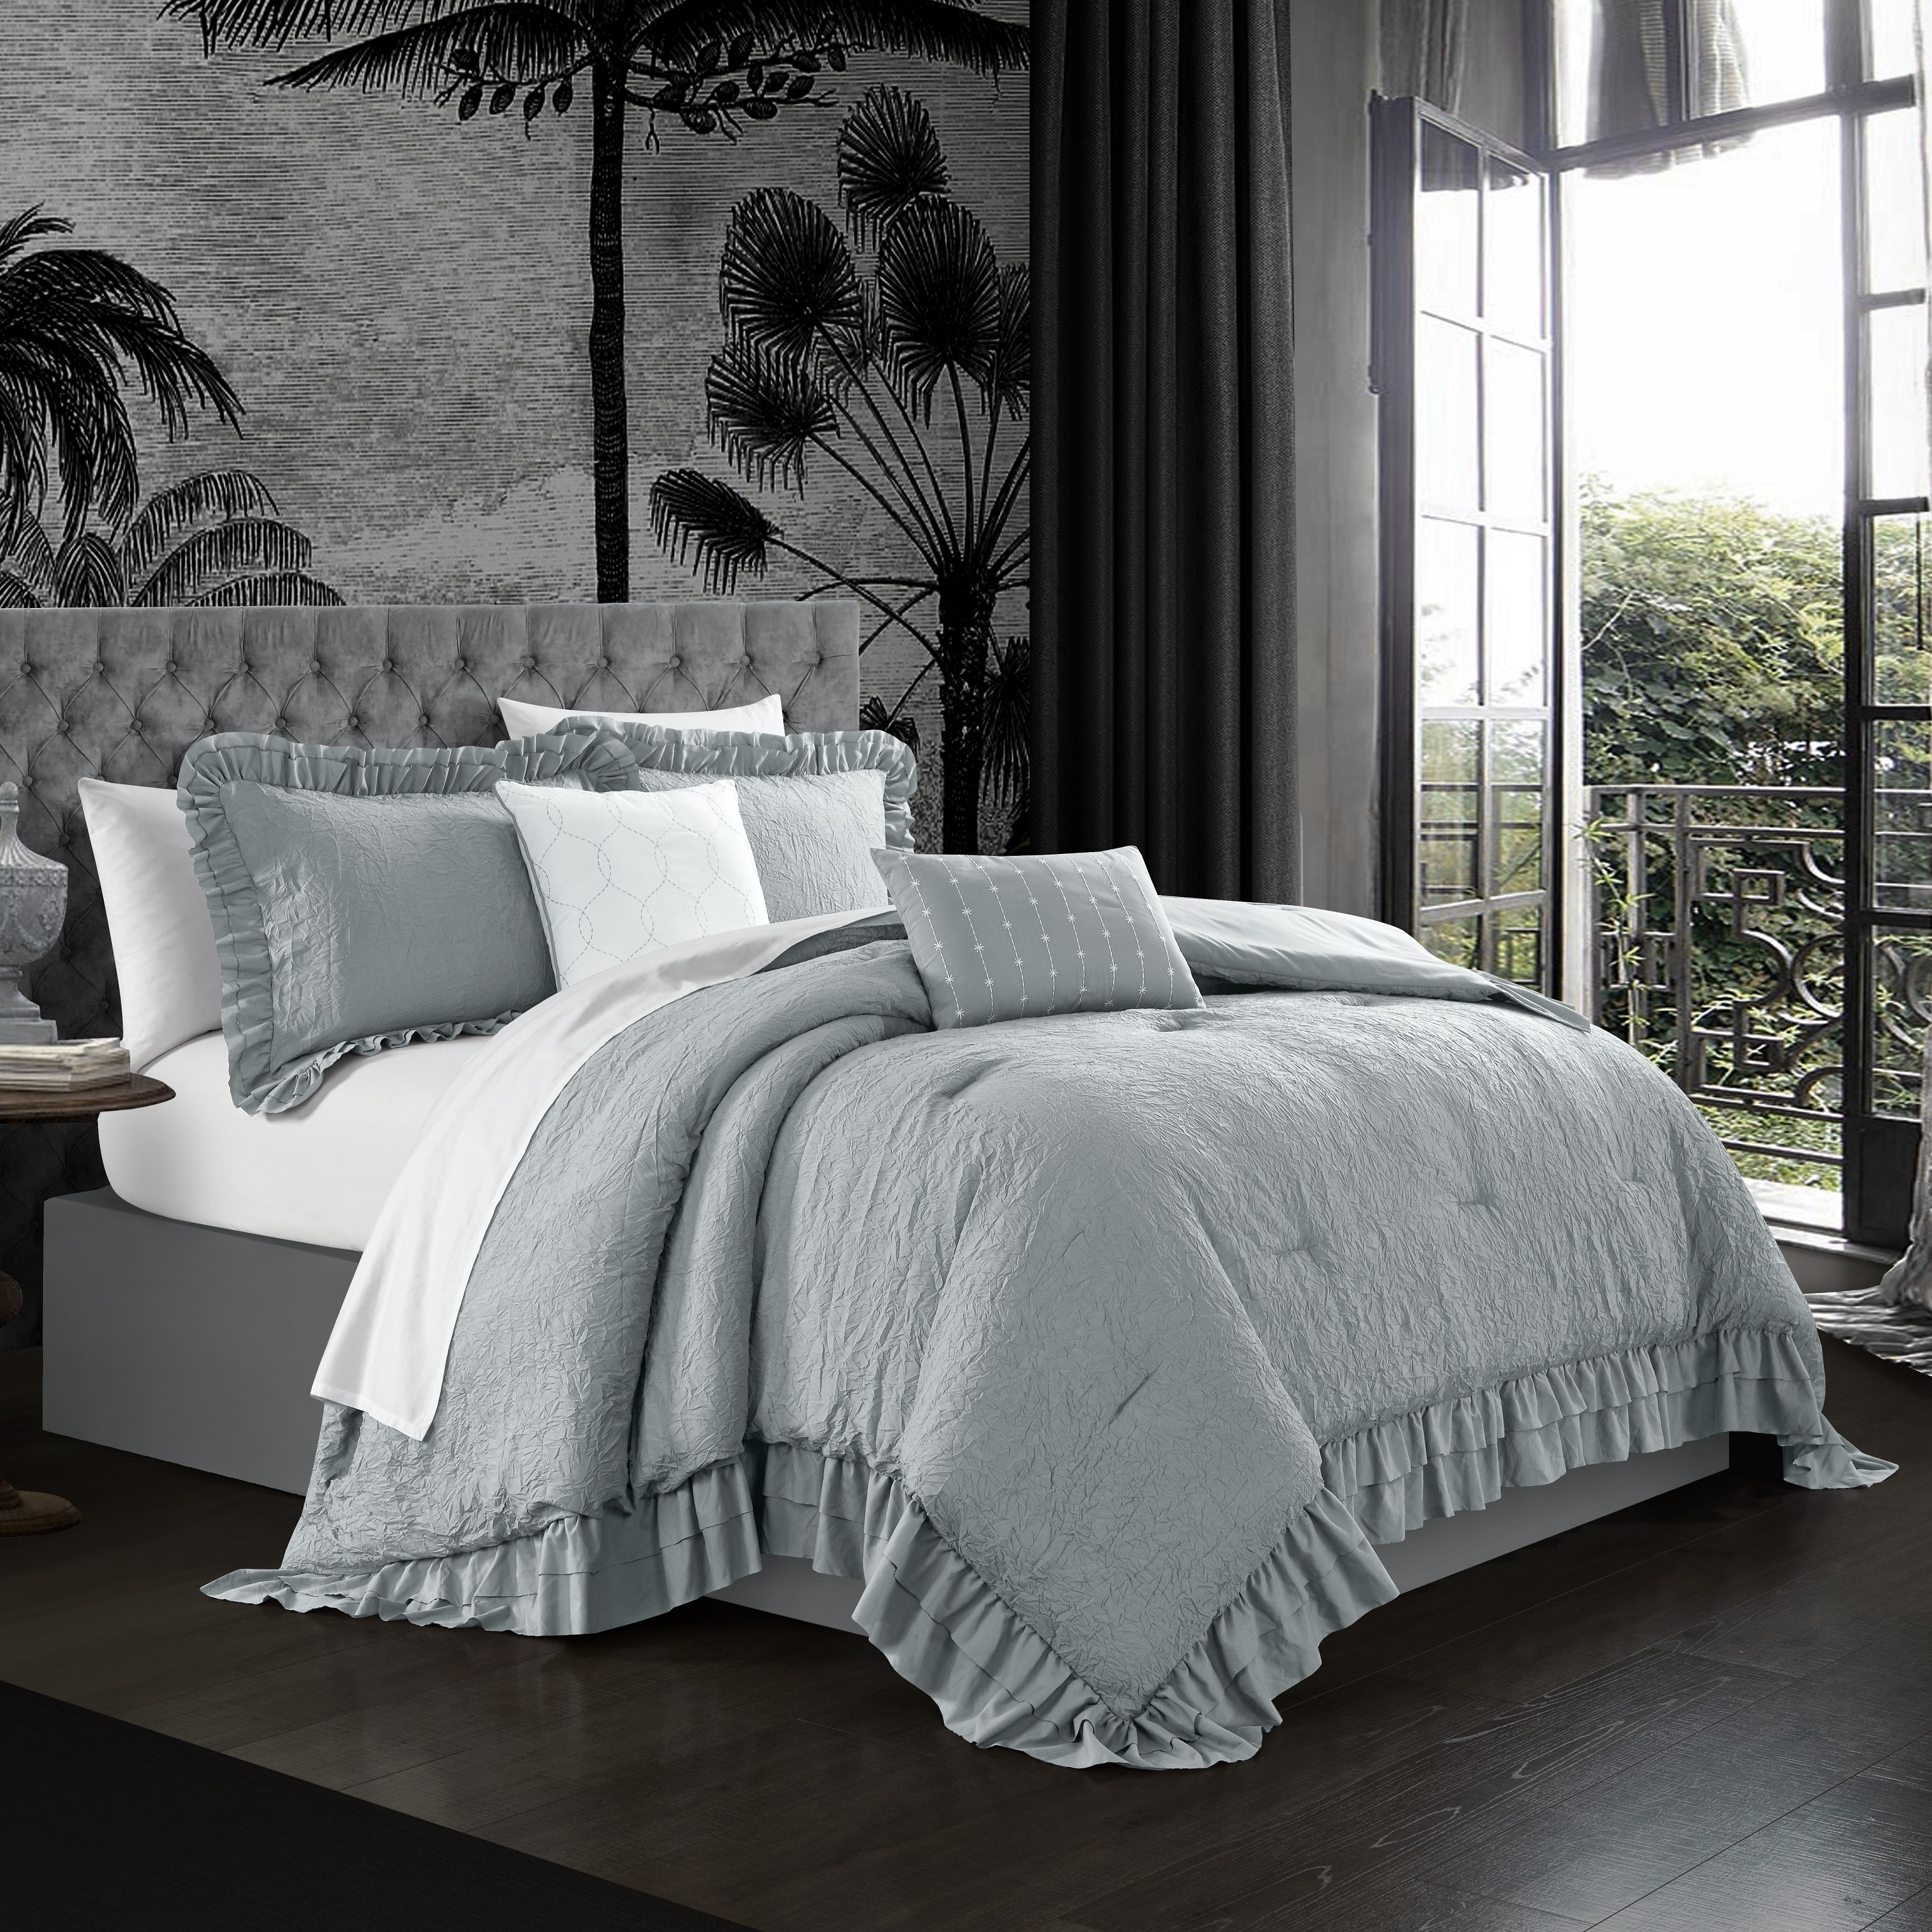 5 piece Kensley Comforter Set Washed Crinkle Ruffled Flange Border Design Bedding - Grey, Queen